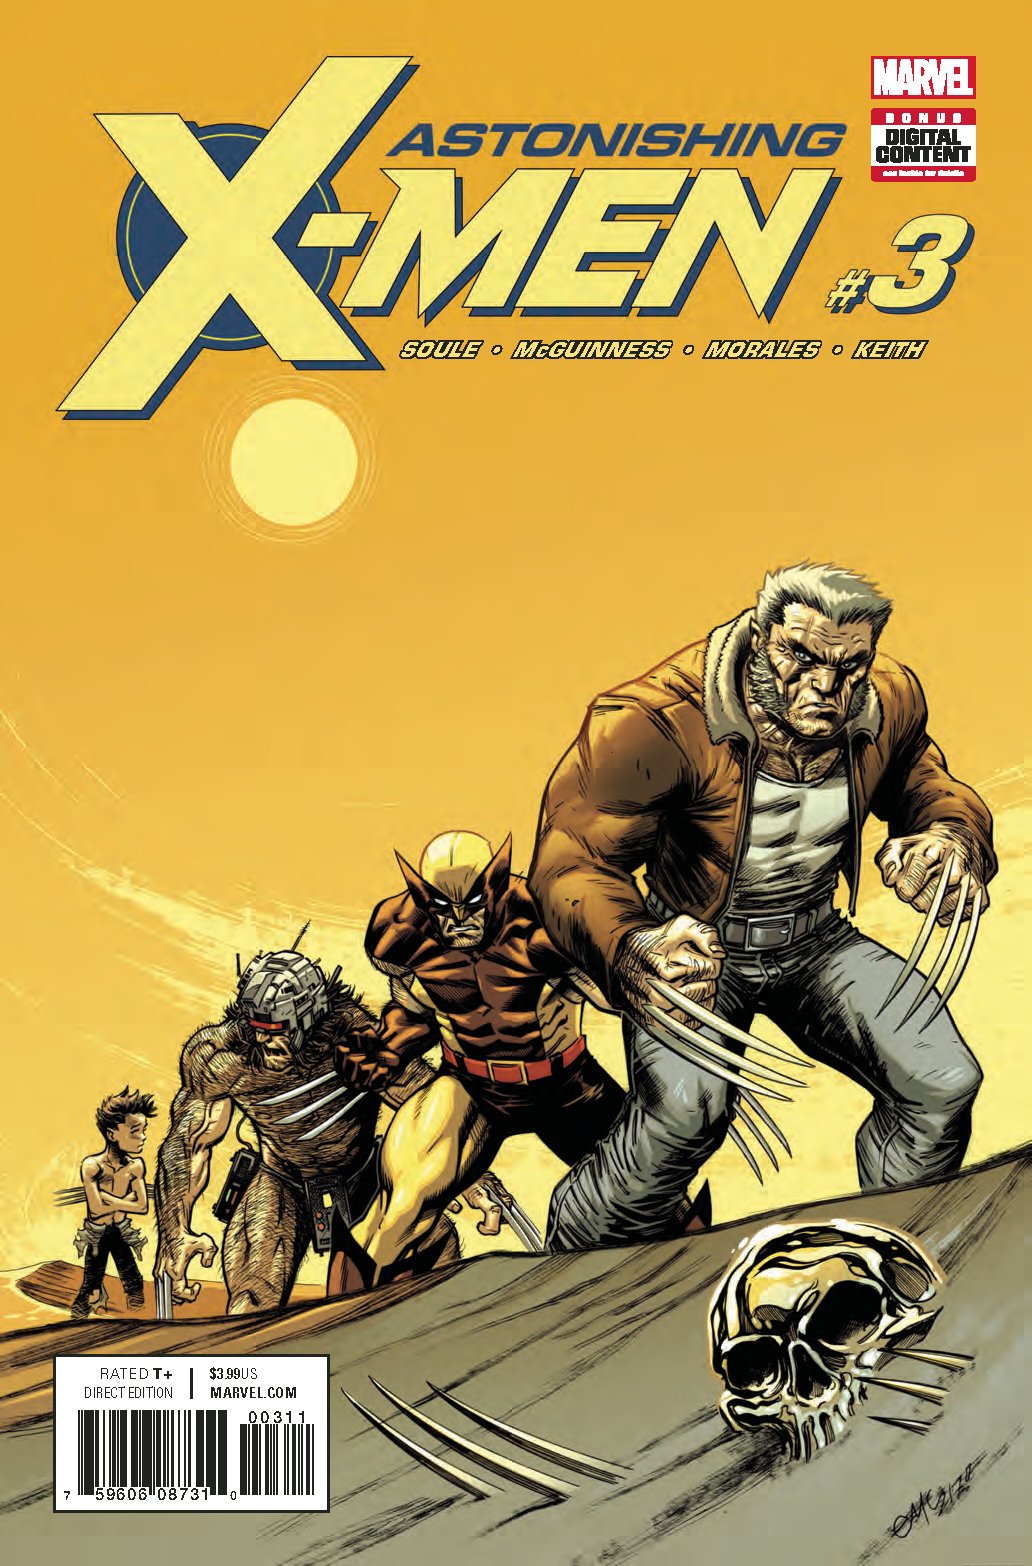 ASTONISHING X-MEN #3 COVER